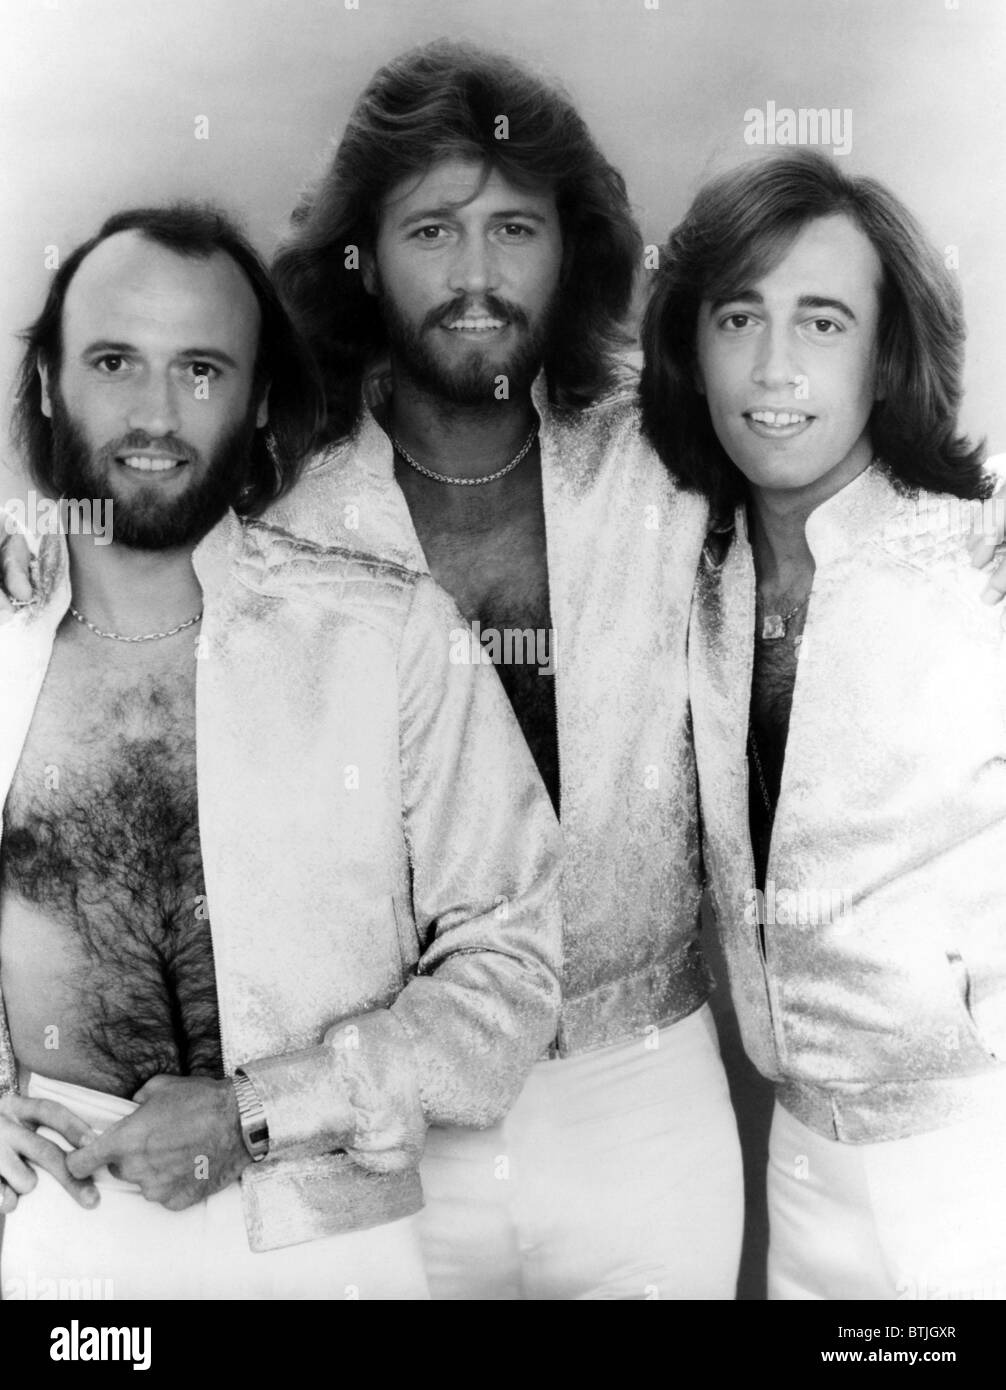 27 maggio 1978: “Stayin’ Alive” dei Bee Gees prima in classifica.